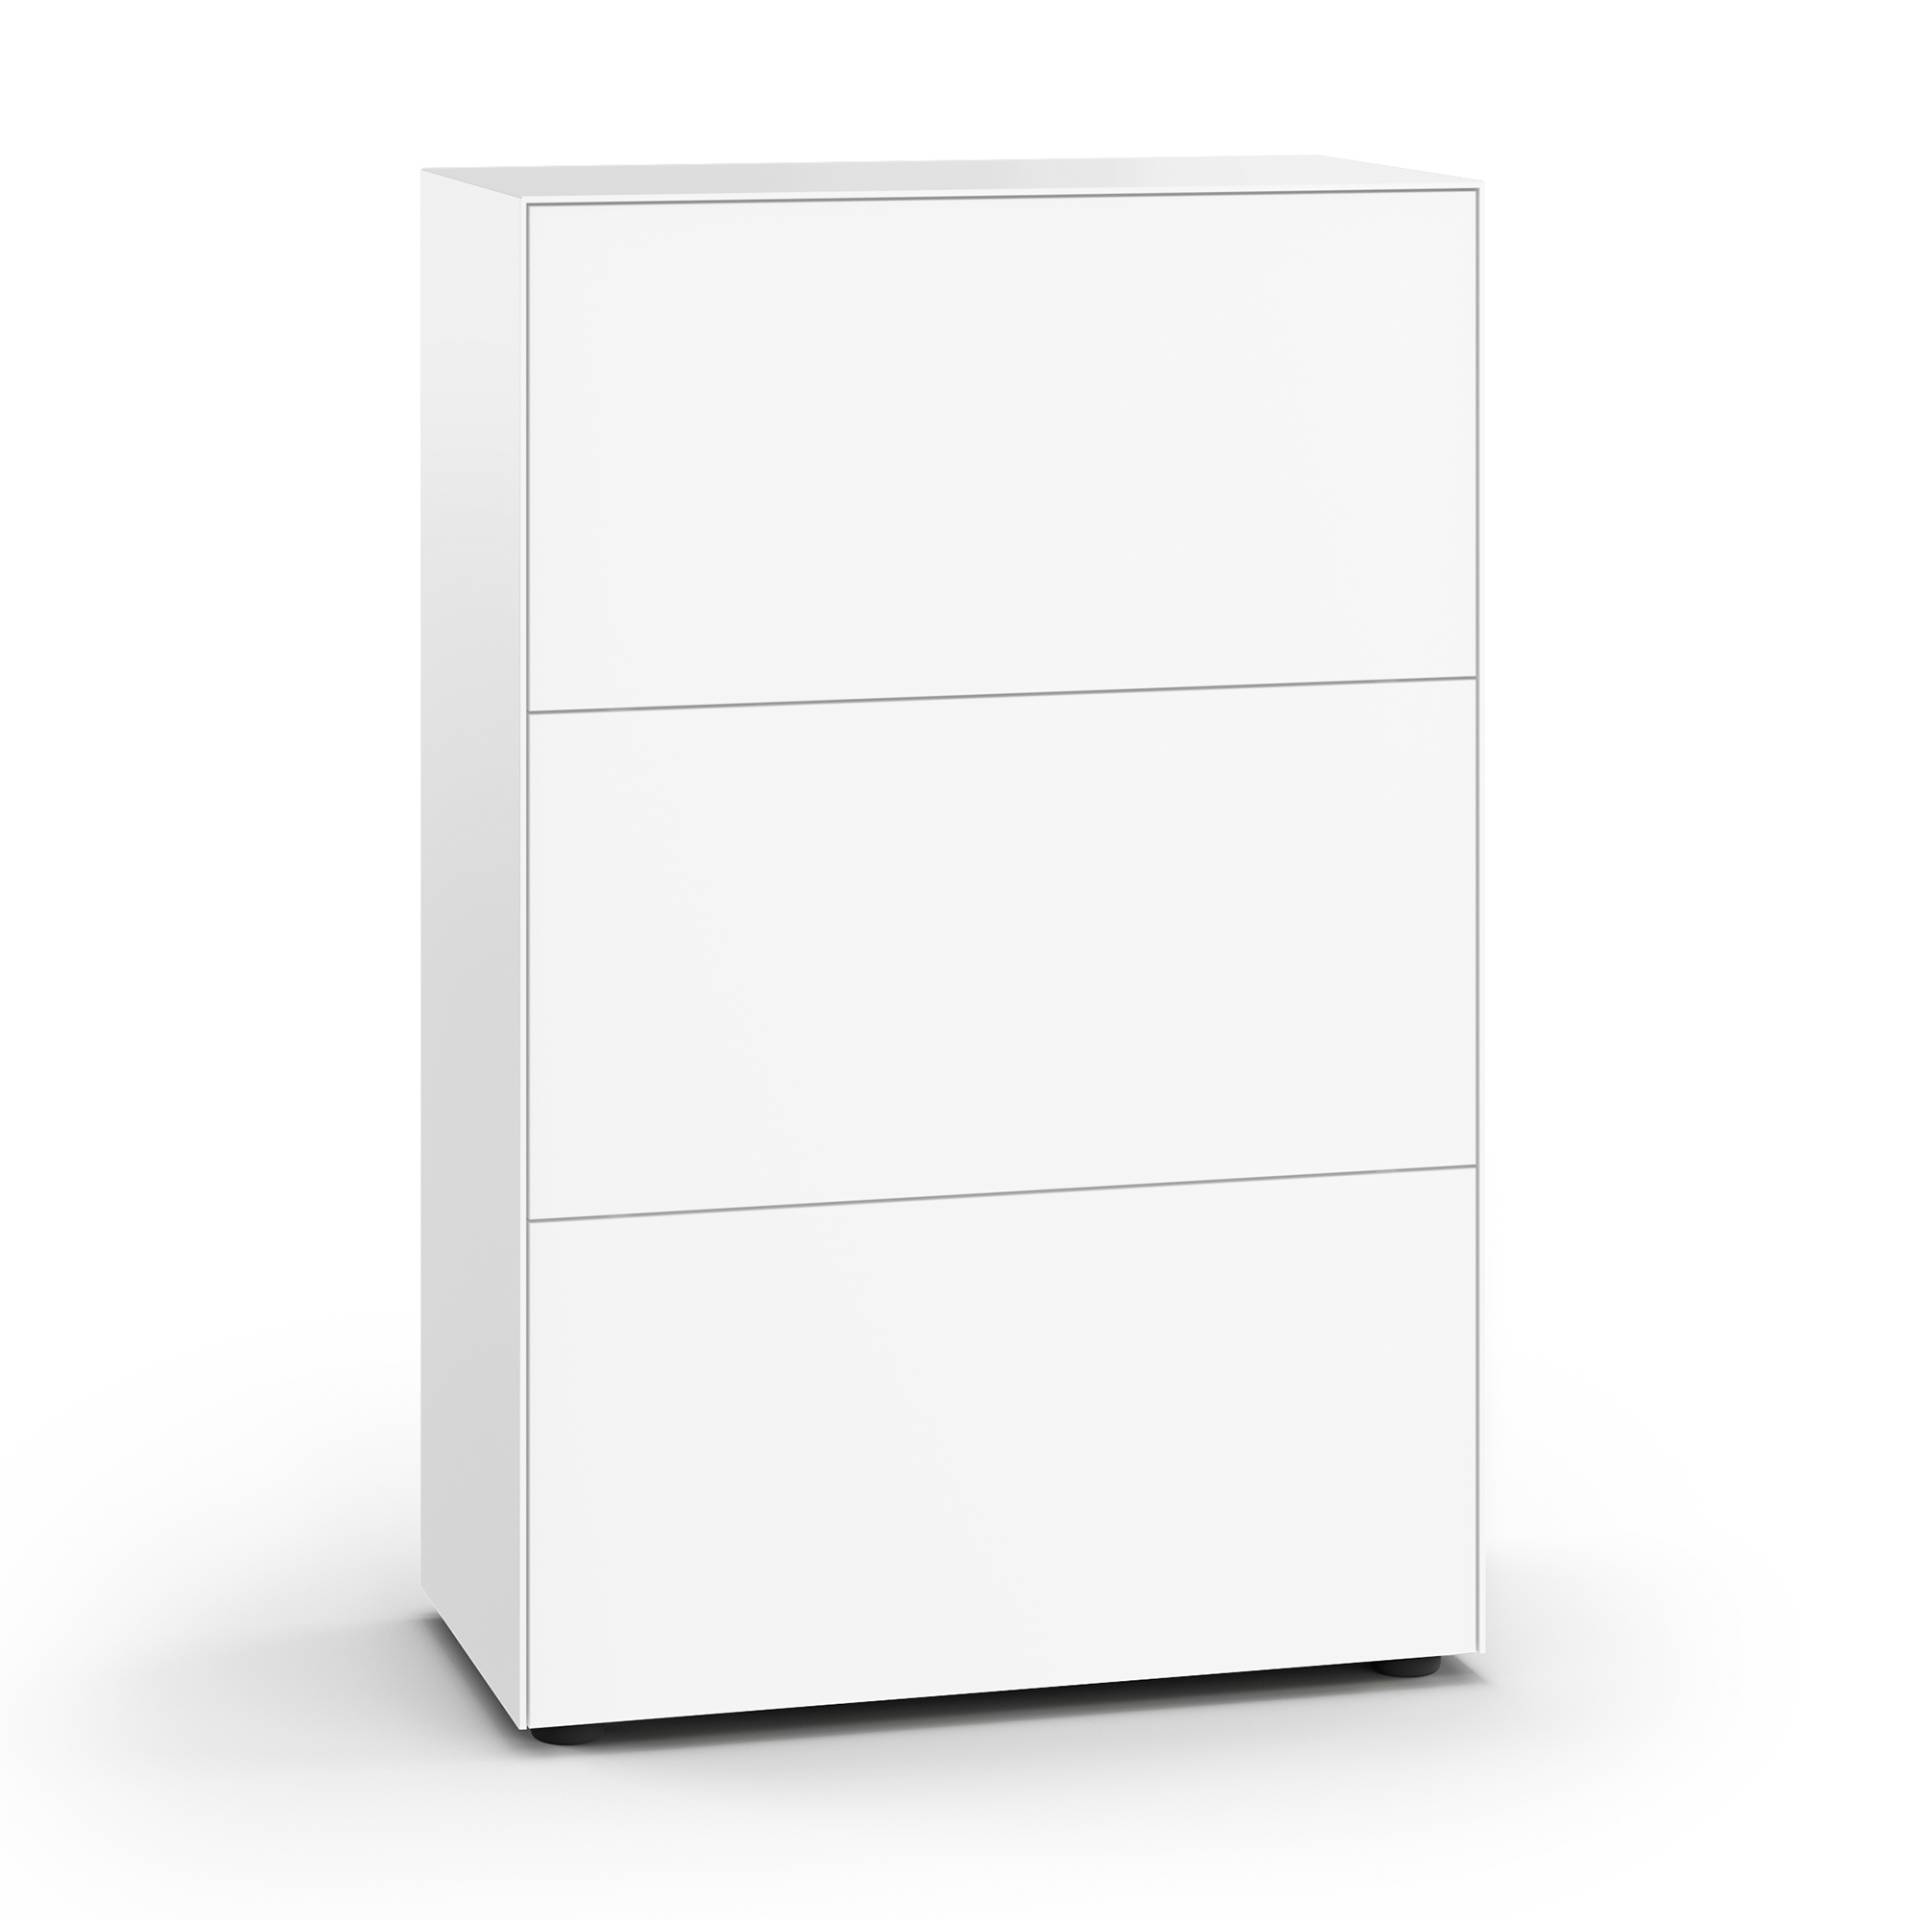 Piure - Nex Pur Office Klapptürbox 75x40x112,5cm - weiß RAL 9016/MDF matt lackiert/mit Gleitfüßen H 3cm/2x Fachboden von Piure